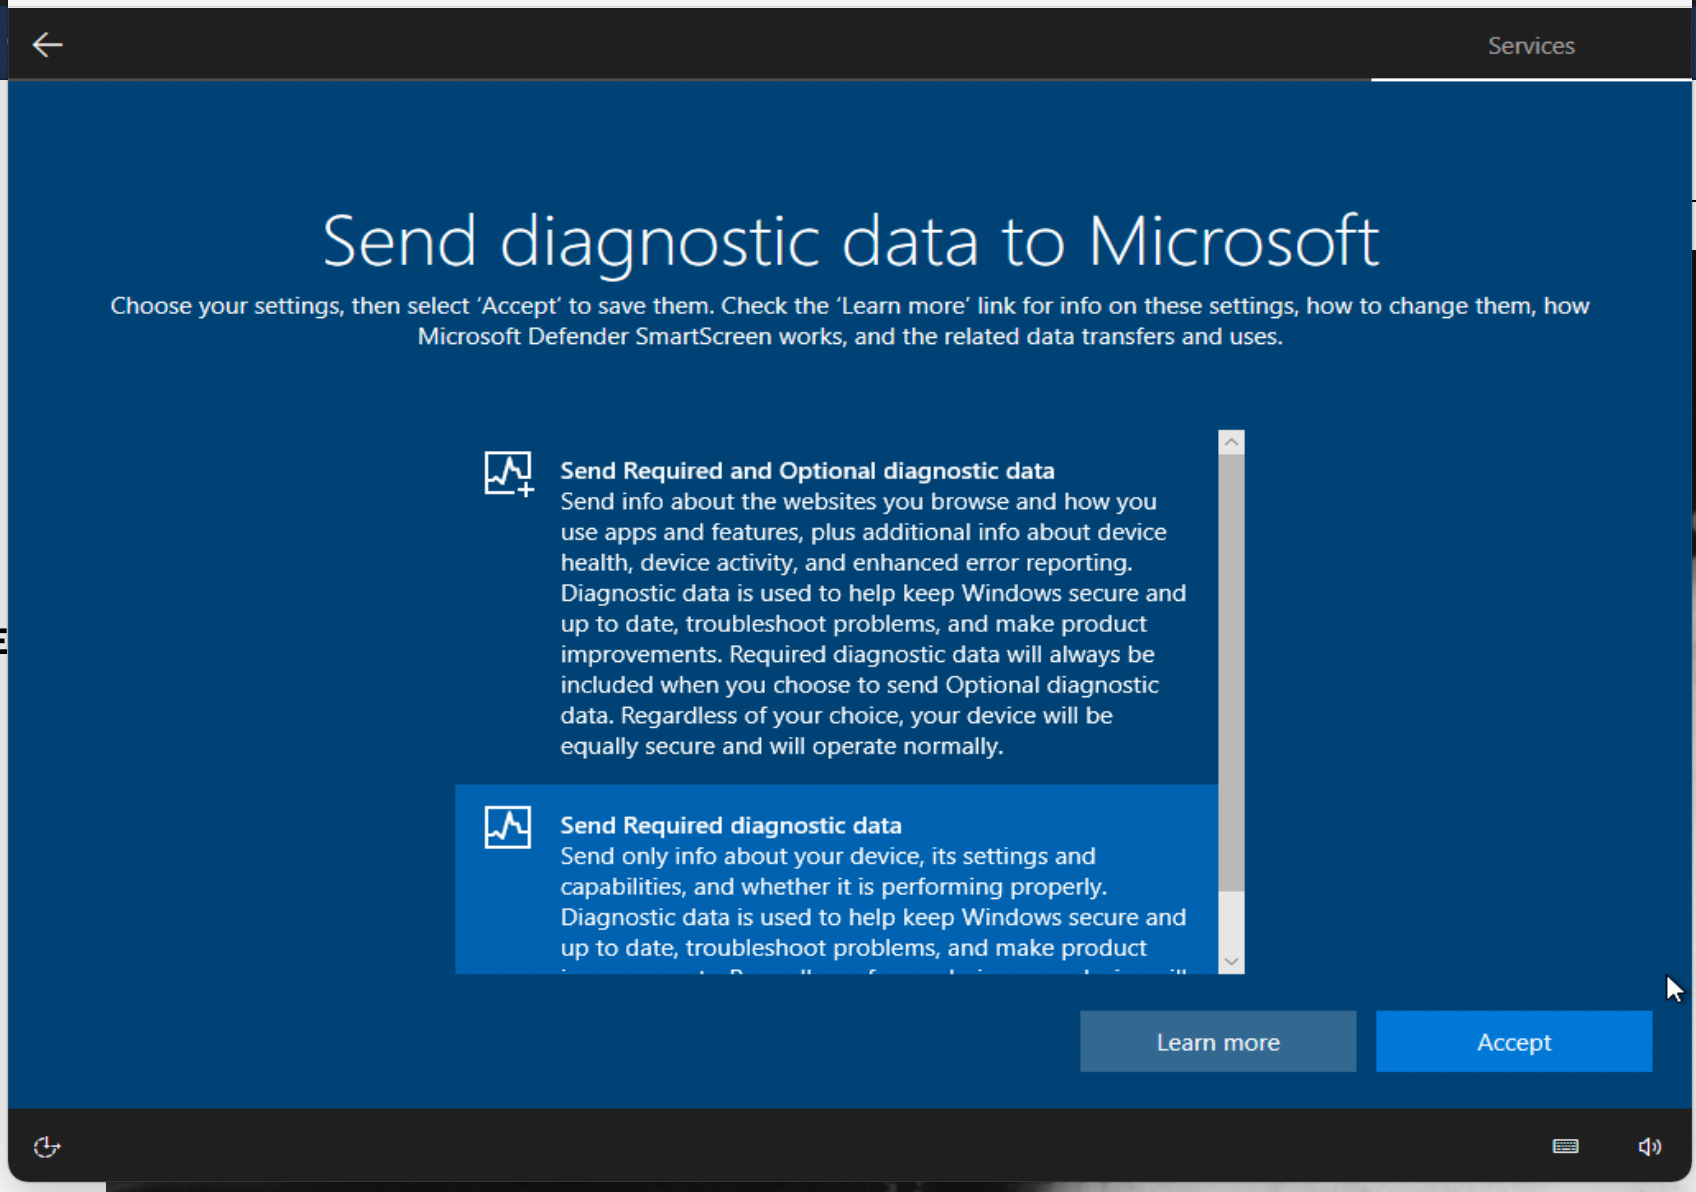 Send diagnostic data to Microsoft